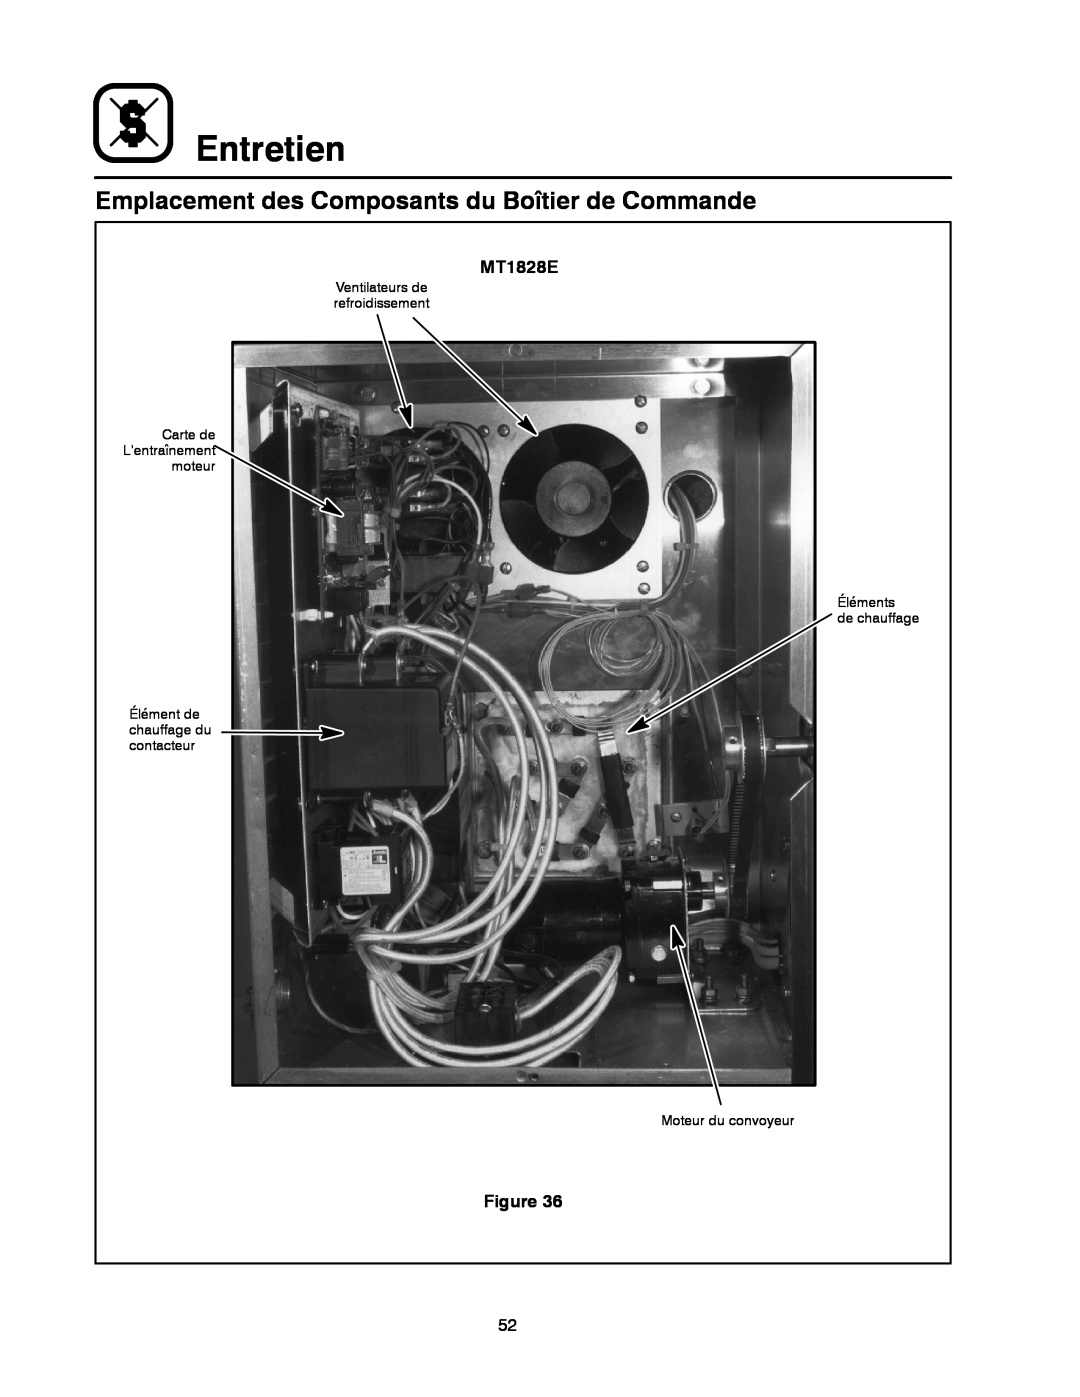 Blodgett MT1828G manual Entretien, Emplacement des Composants du Boîtier de Commande, MT1828E 